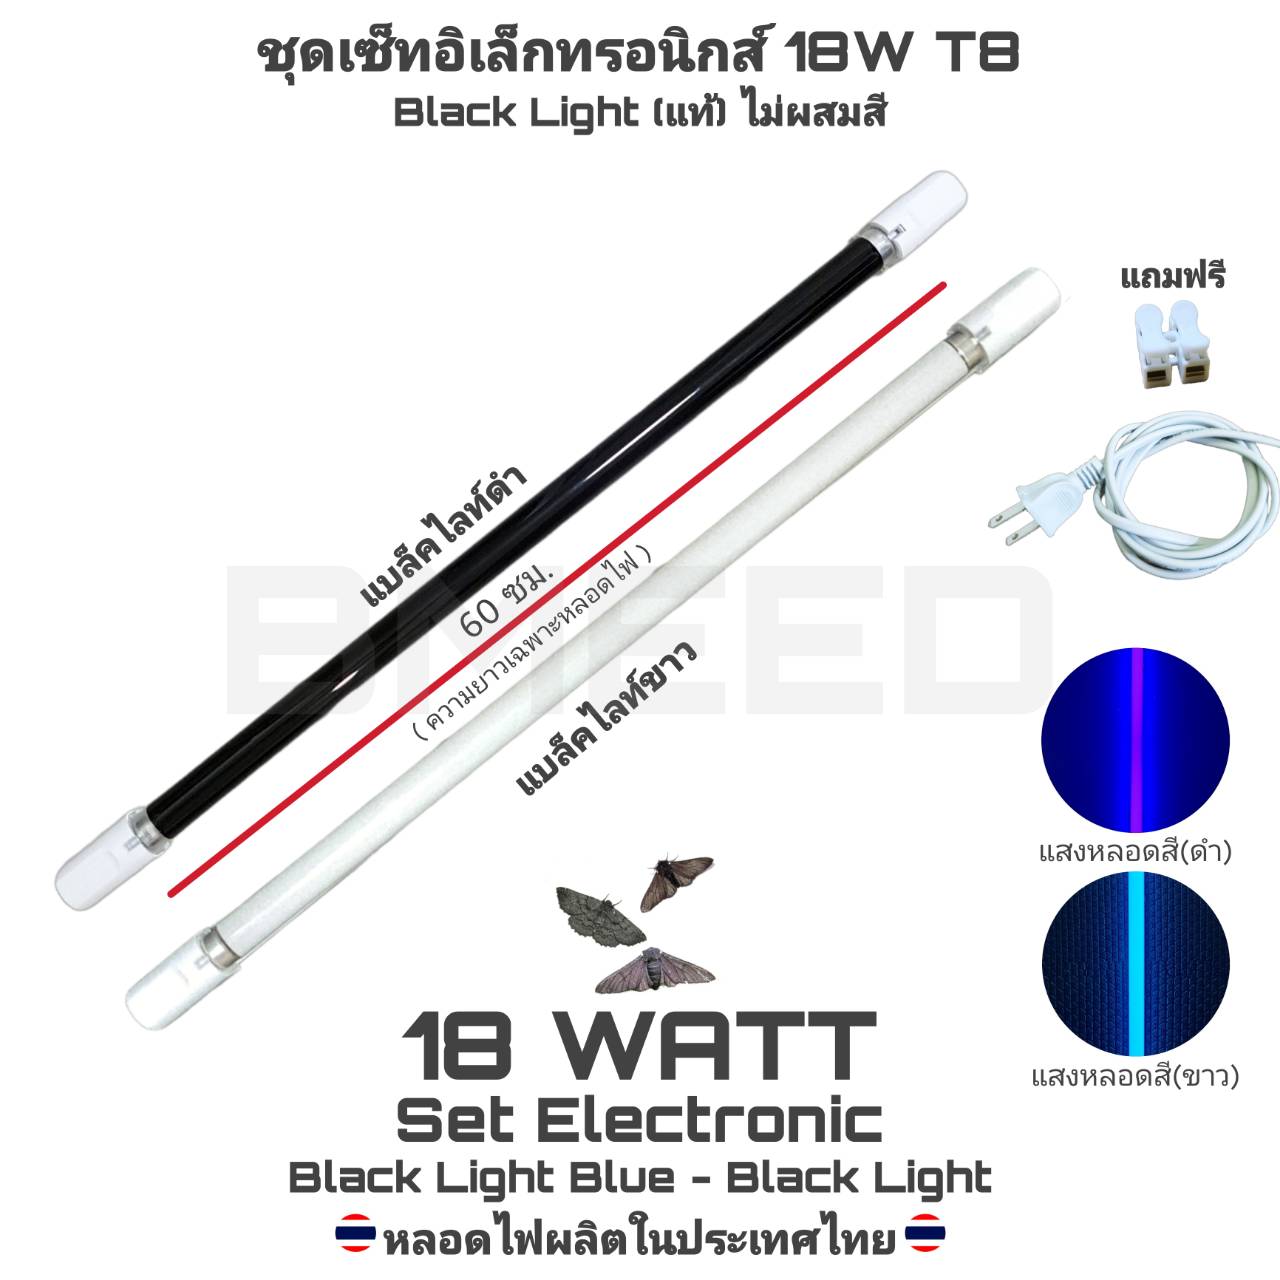 ชุดรางอิเล็กทรอนิกส์(ชุดนีออนตรง) แบล็คไลท์บลู และ แบล็คไลท์ขาว(หลอดแท้ไม่ผสมสี)18W T8 พร้อมใช้งาน Black Light Blue AC 220V(ไฟบ้าน)